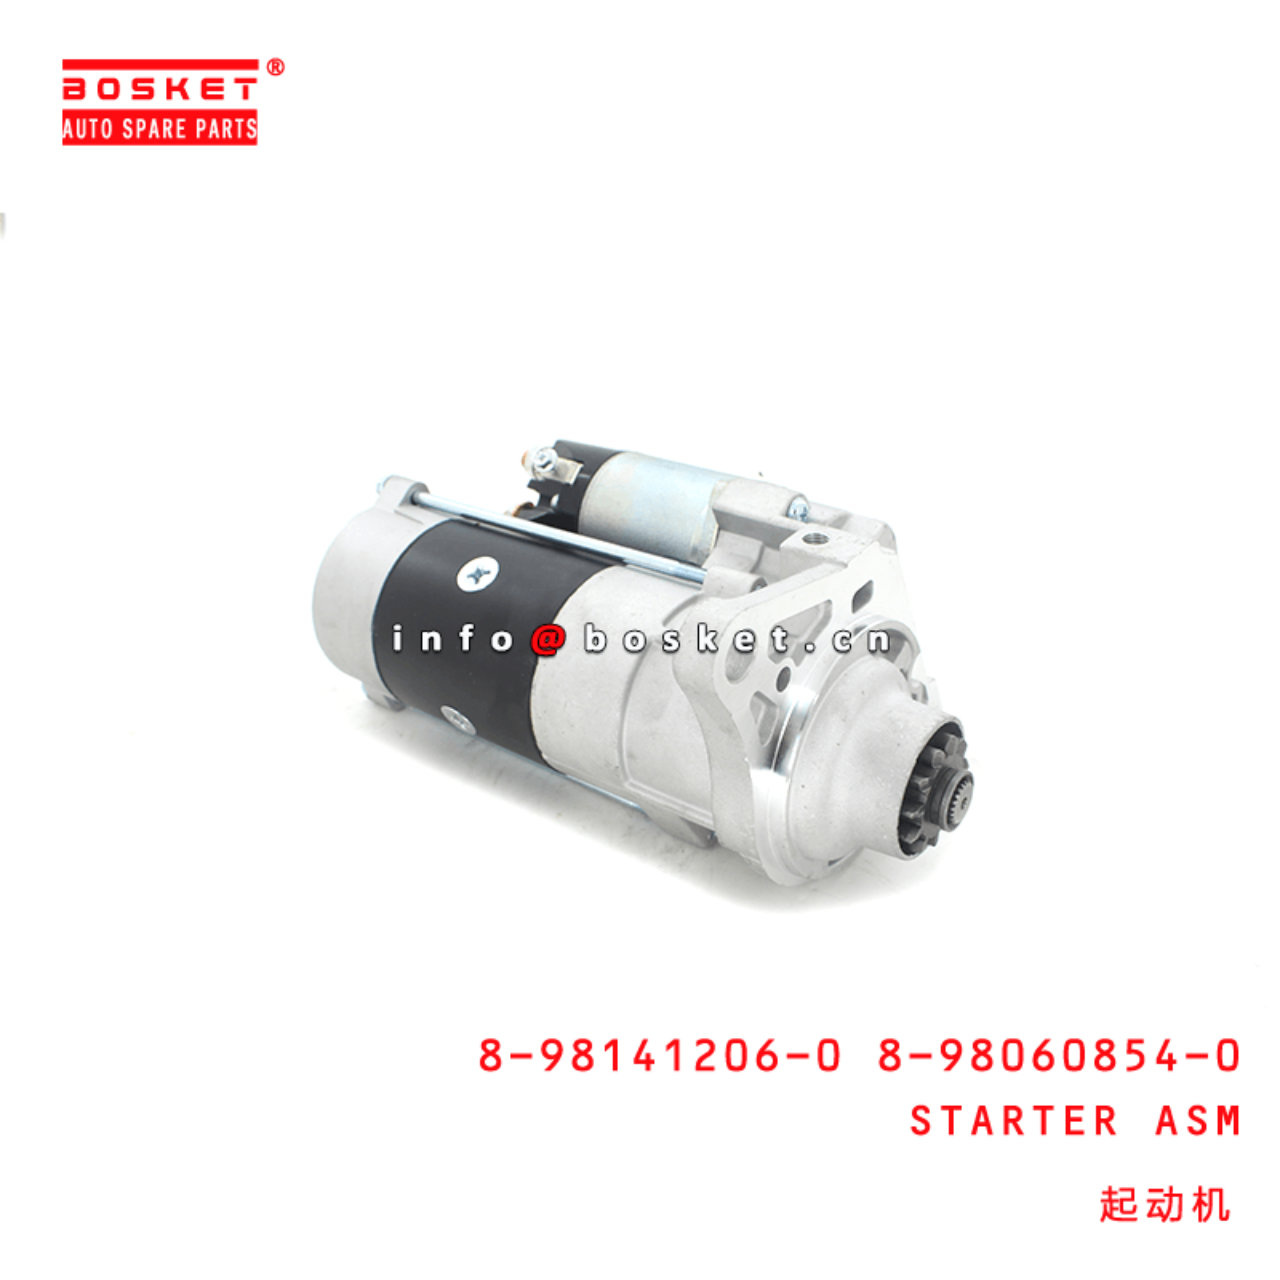 8-98141206-0 8-98060854-0 Starter Assembly Suitable for ISUZU FRR 6HK1 8981412060 8980608540